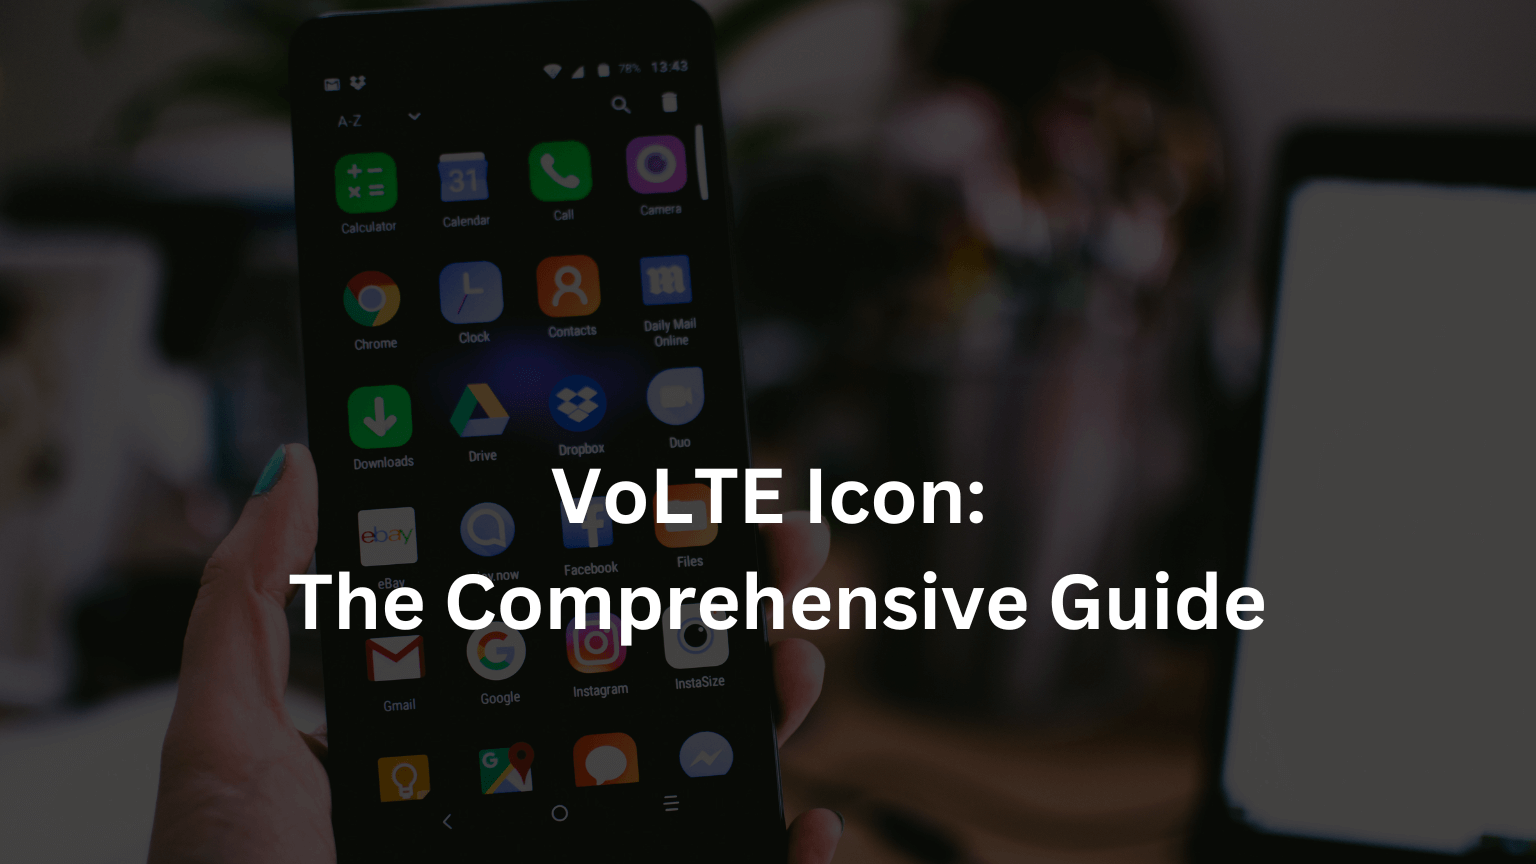 VoLTE Icon: The Comprehensive Guide